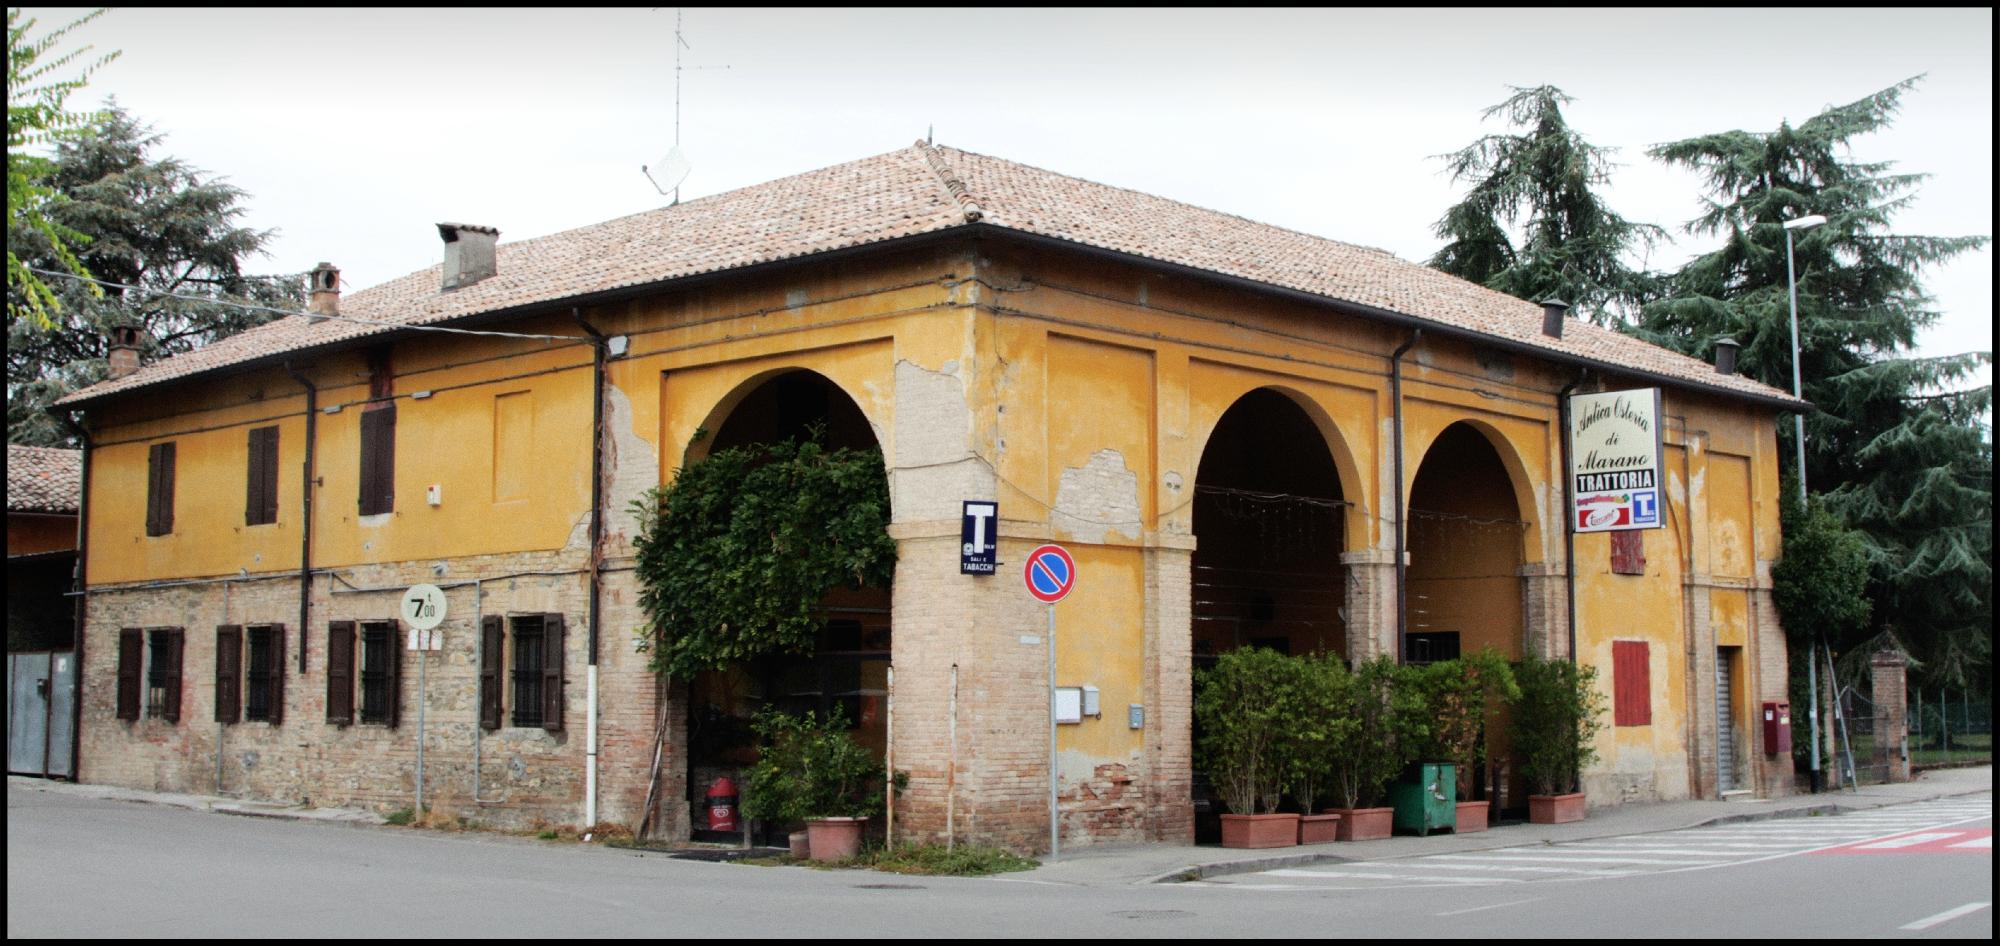 Antica Osteria Di Marano, Parma